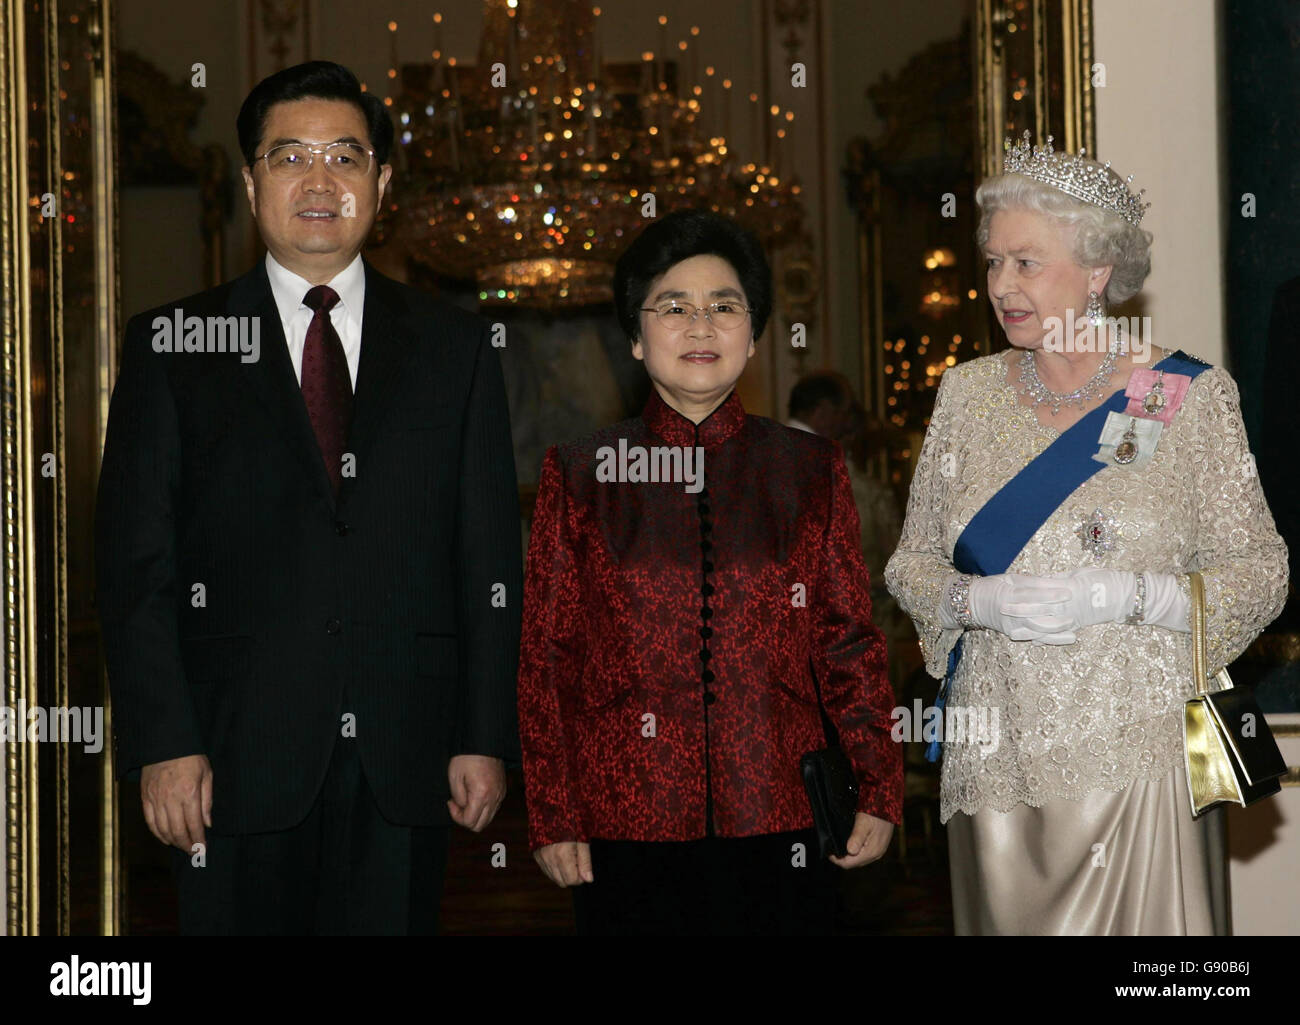 (Von links nach rechts:) der chinesische Präsident Hu Jintao und seine Frau, Madame Liu Yongqing, mit der britischen Königin Elizabeth II. Vor einem Staatsbankett im Buckingham Palace im Zentrum von London, Dienstag, den 8. November 2005. Hunderte von Demonstranten der Free Tibet Campaign, die ein Ende der chinesischen Besetzung Tibets forderten, packten die Londoner Mall, um ihre Anwesenheit dem Anführer bekannt zu machen. Siehe PA Story ROYAL China. DRÜCKEN SIE VERBANDSFOTO. Der Bildnachweis sollte lauten: Michael Dunlea/PA/NPA Pool/Daily Mail Stockfoto